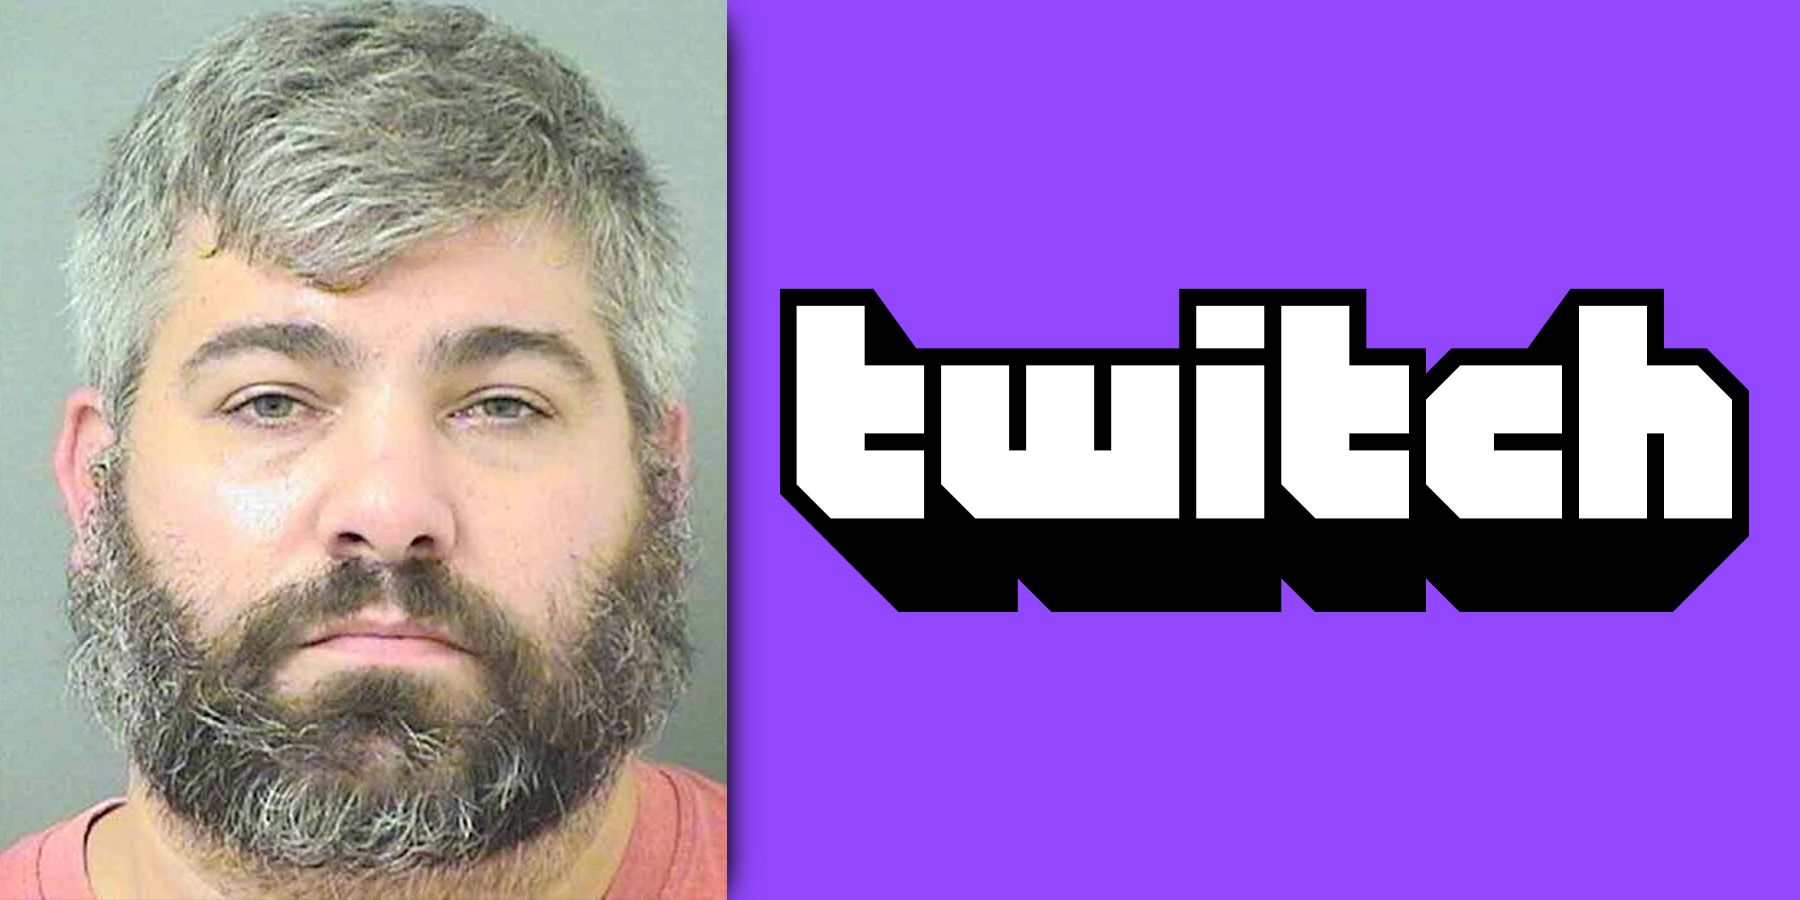 twitch viewer mass murder threat arrested